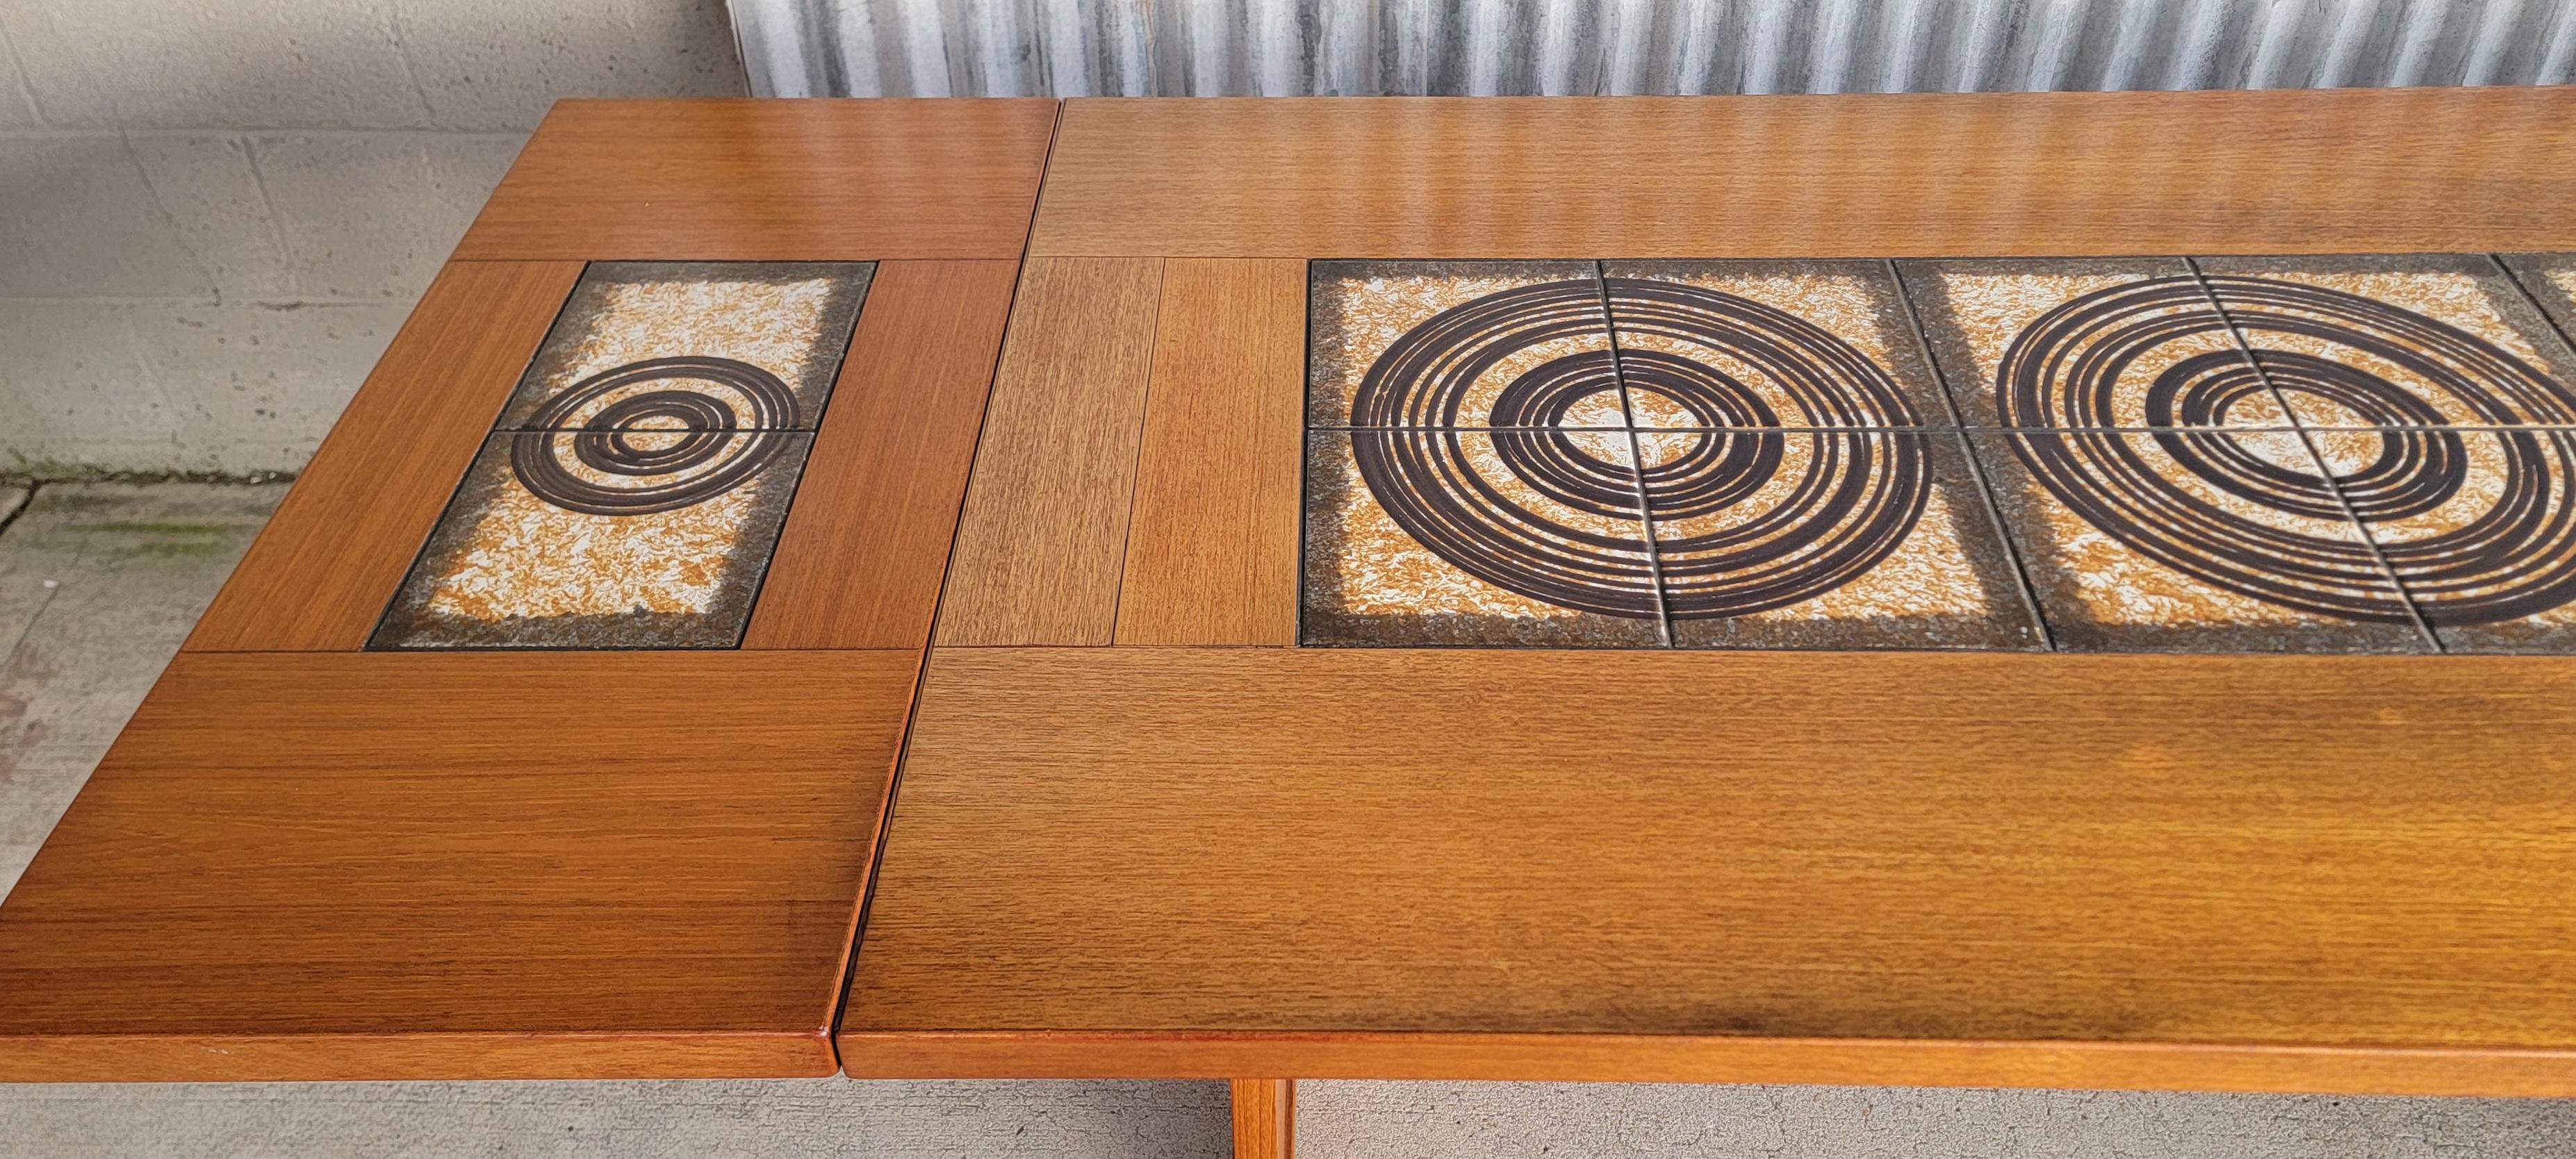 Teak & Ceramic Tile Danish Modern Expanding Dining Table 1